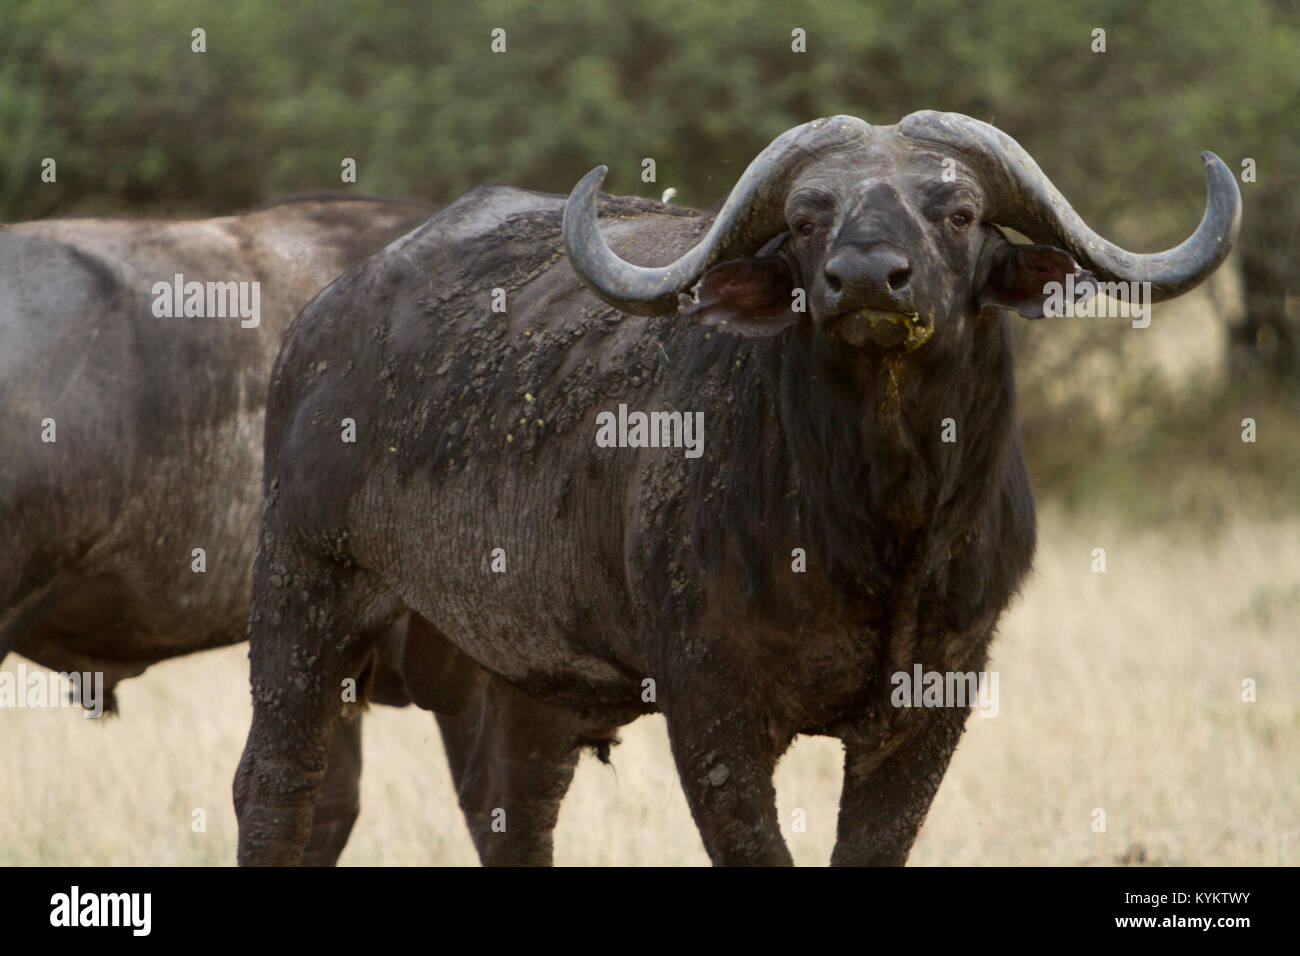 Un búfalo africano, o Cape Buffalo, se encuentra en una posición defensiva en el Parque nacional Serengeti, Tanzania Foto de stock